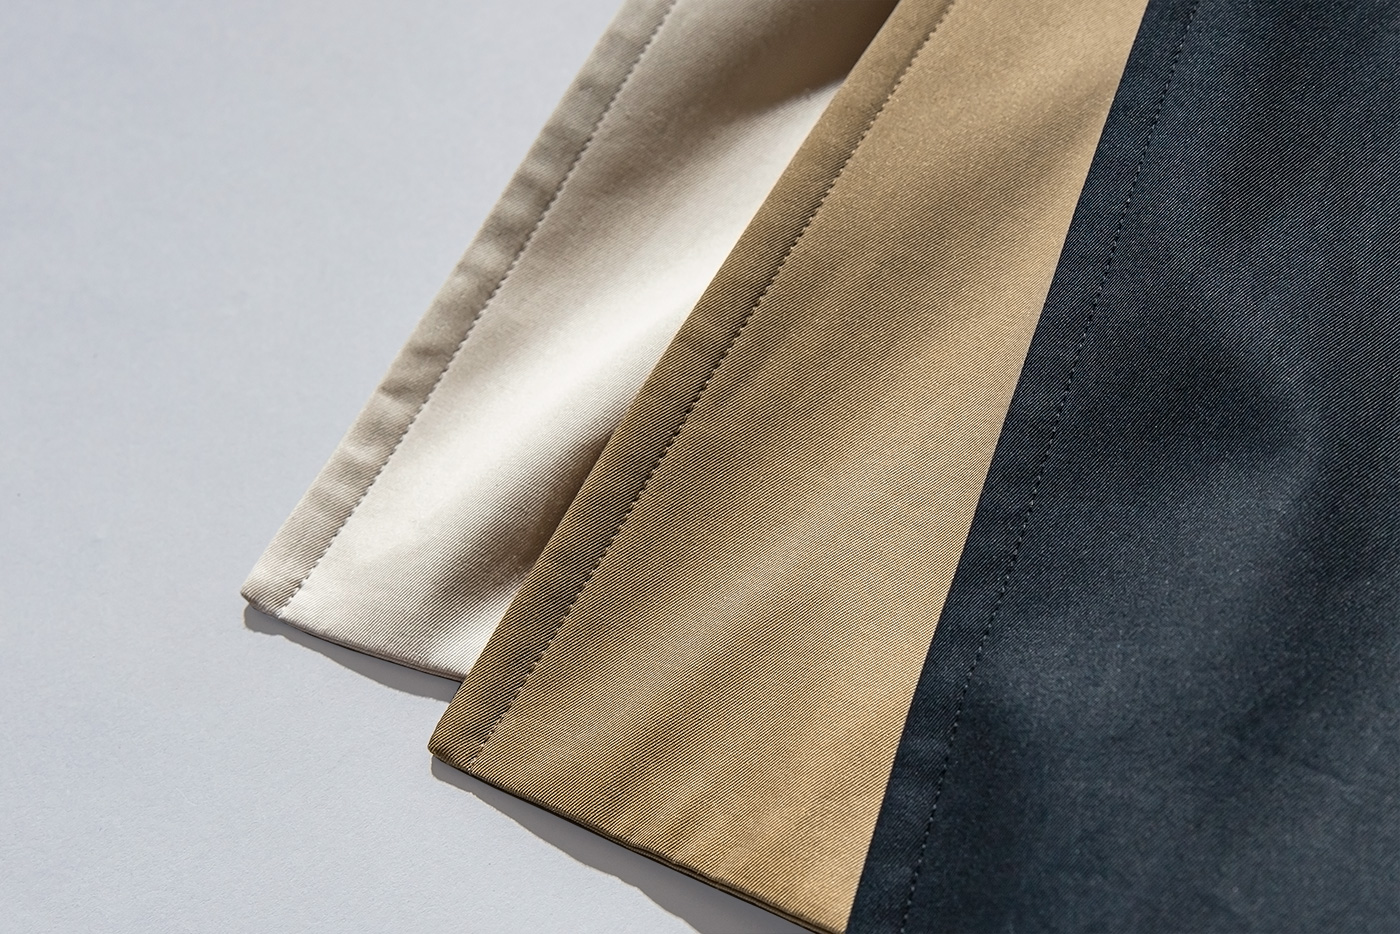 ブリティシュメイド オリジナル タイロッケンコート 「ヨークシャー」 繊細な超長綿を高密度に織り上げた高級素材